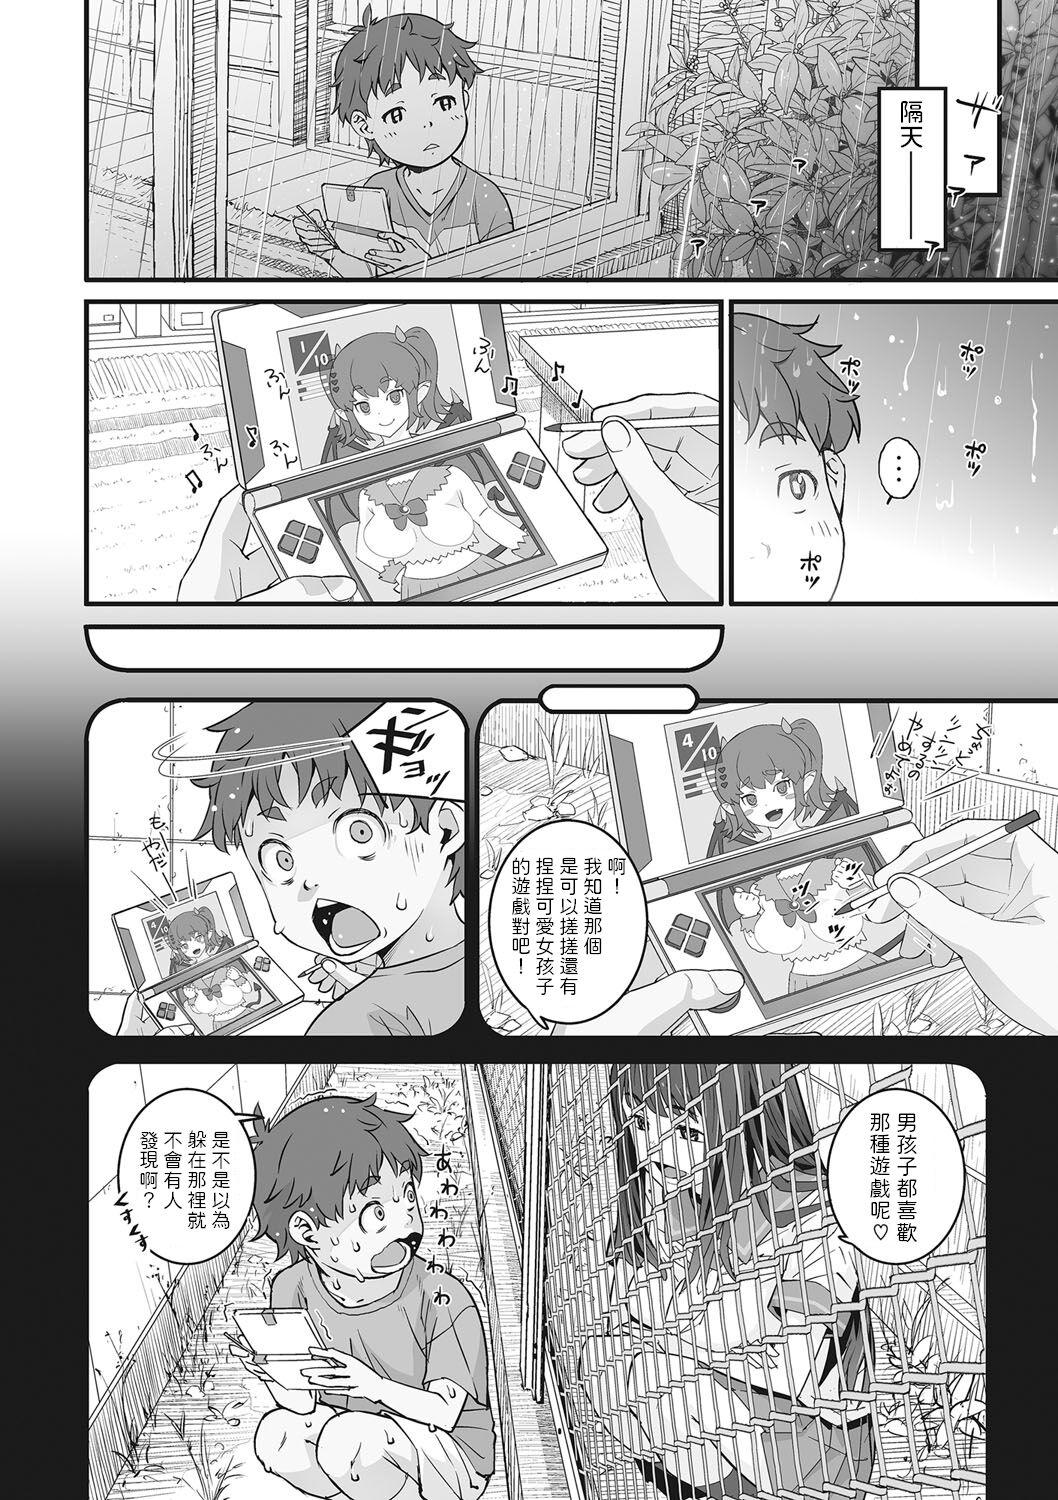 Leche Kanaami Goshi no Natsuyasumi Tinder - Page 4